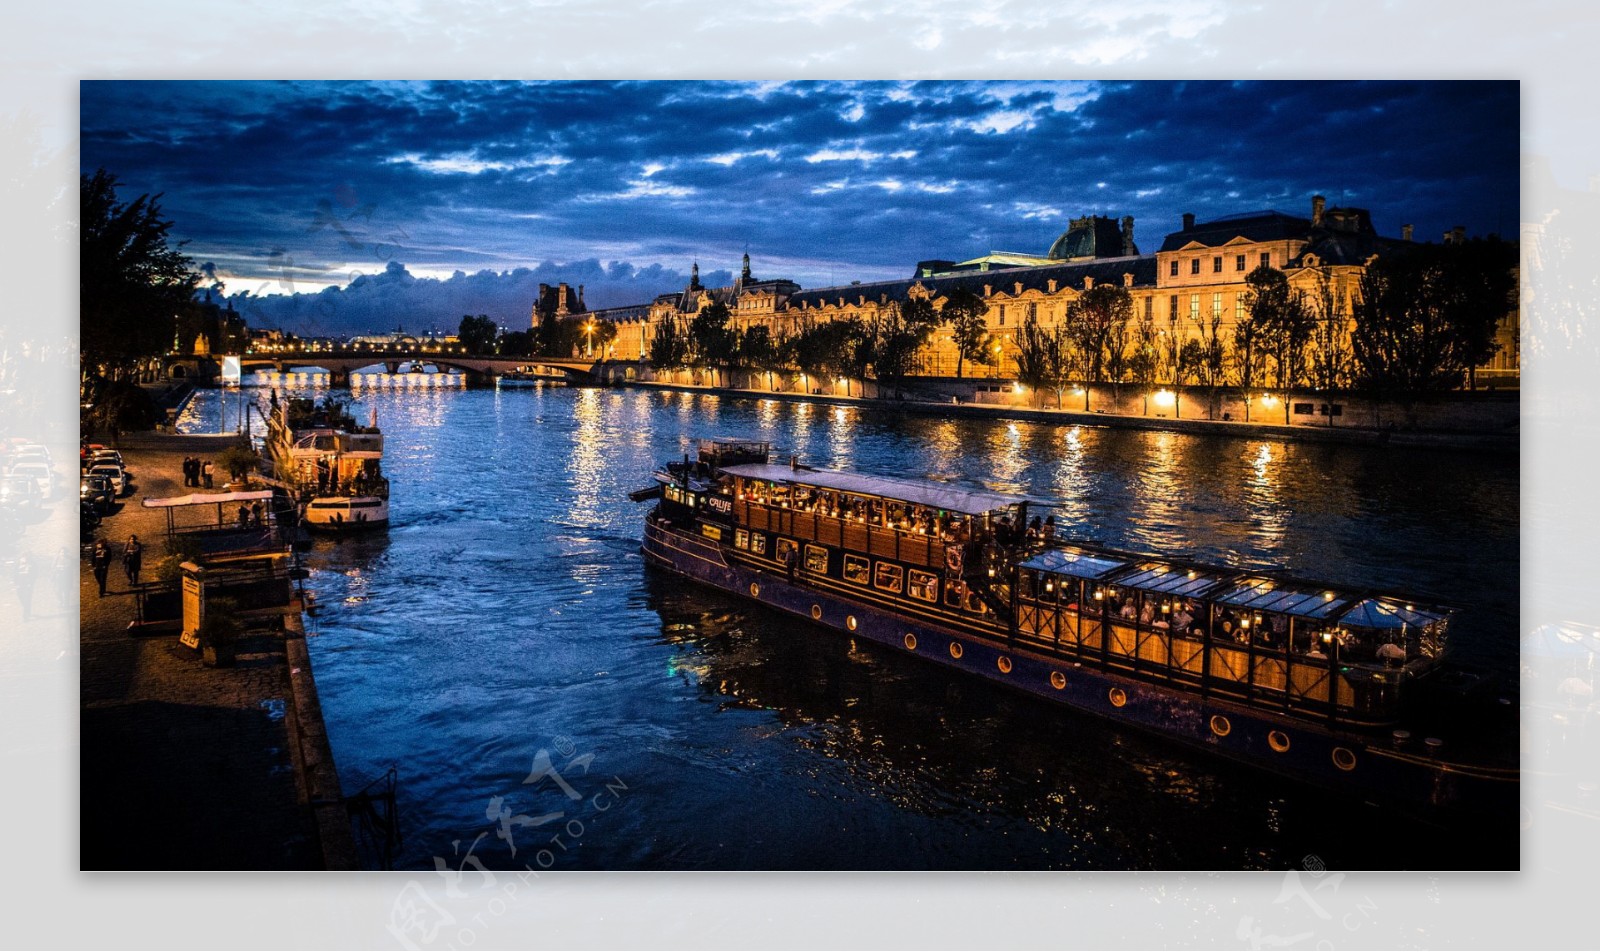 美丽的巴黎塞纳河夜景图片